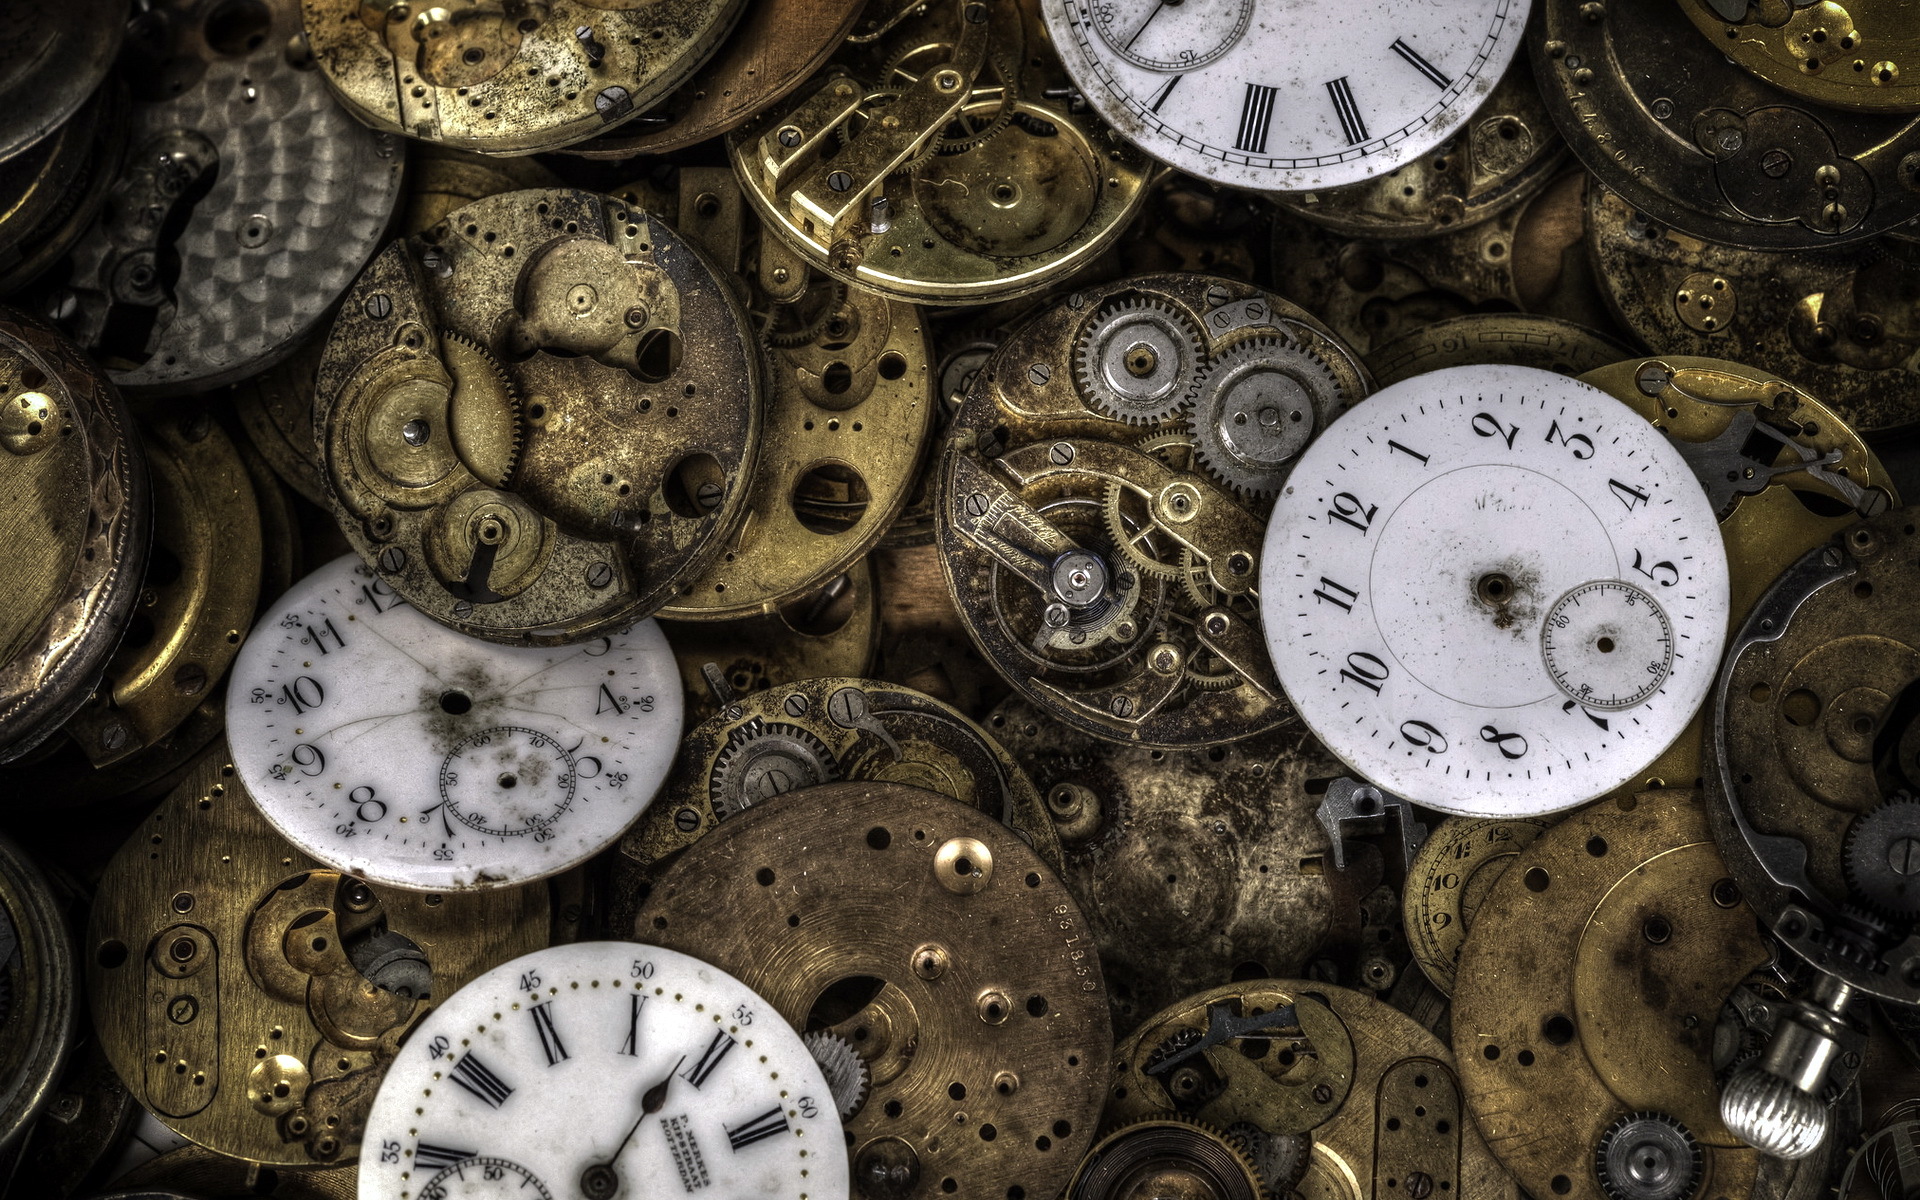 Фото обоев на часы. Старинные часы. Фон с часами. Красивый фон для часов. Текстура часов.